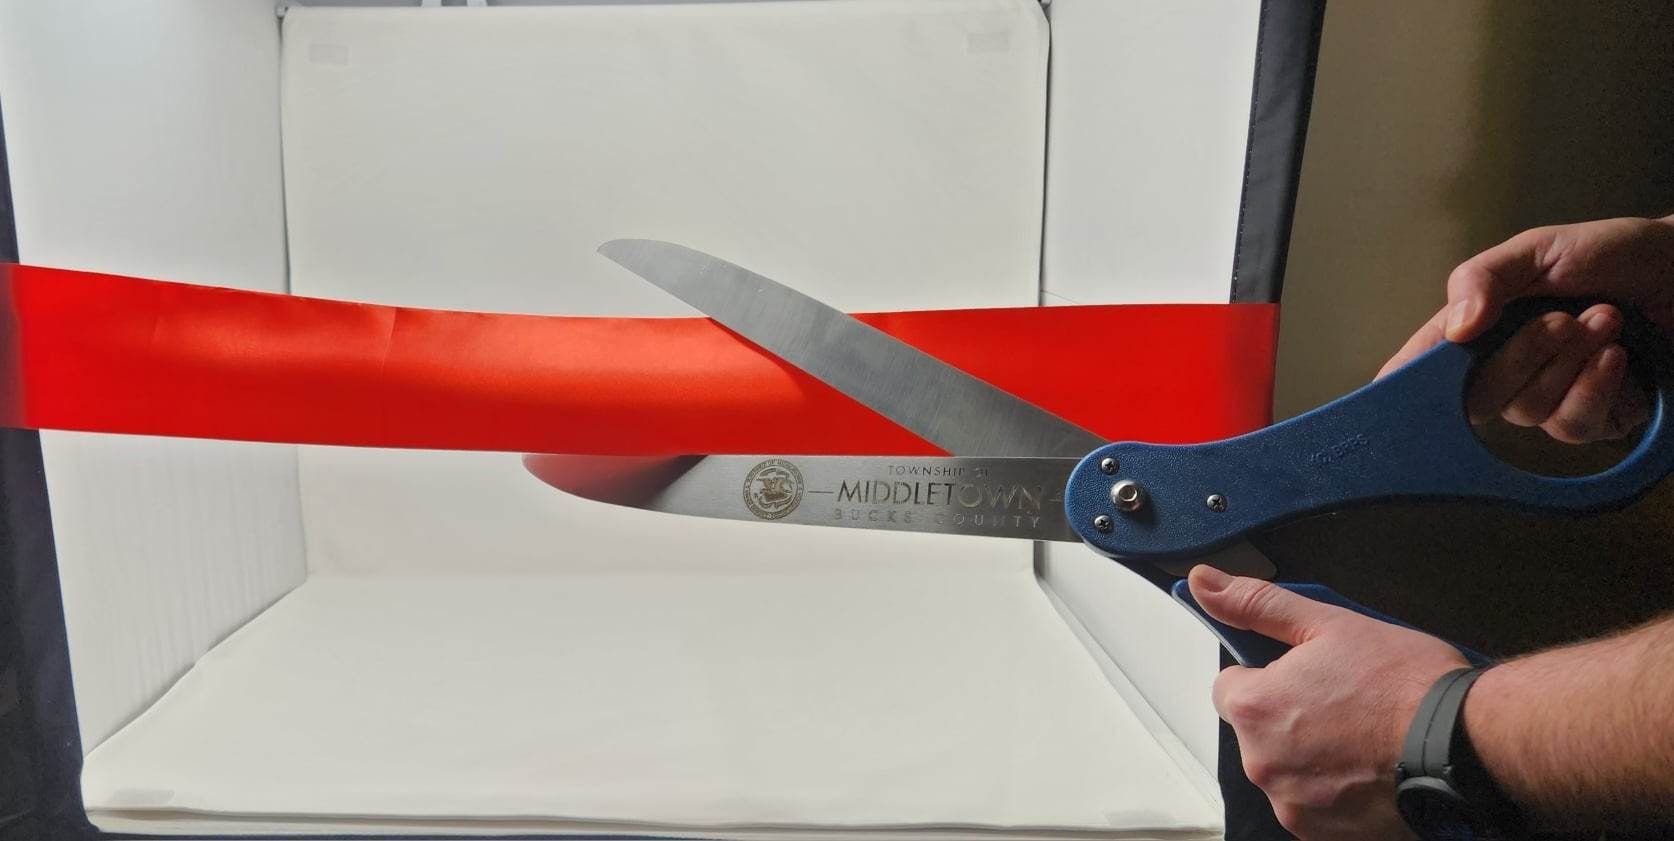 Ribbon Scissors - Custom Printed Ceremonial Scissors, Cutting